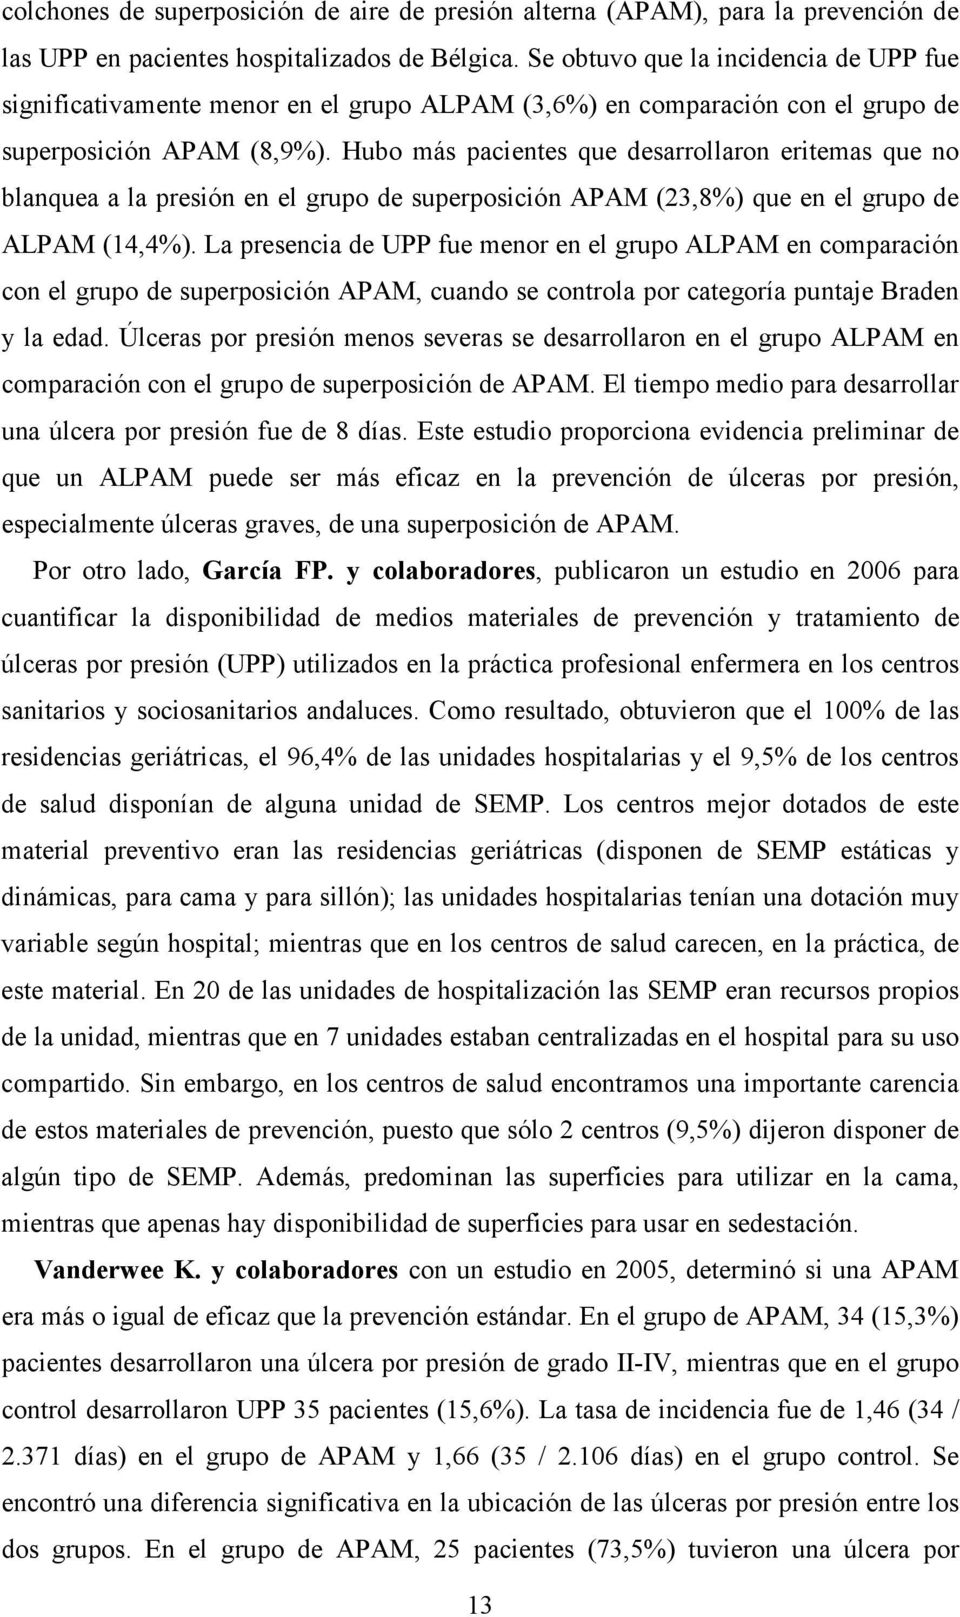 Hubo más pacientes que desarrollaron eritemas que no blanquea a la presión en el grupo de superposición APAM (23,8%) que en el grupo de ALPAM (14,4%).